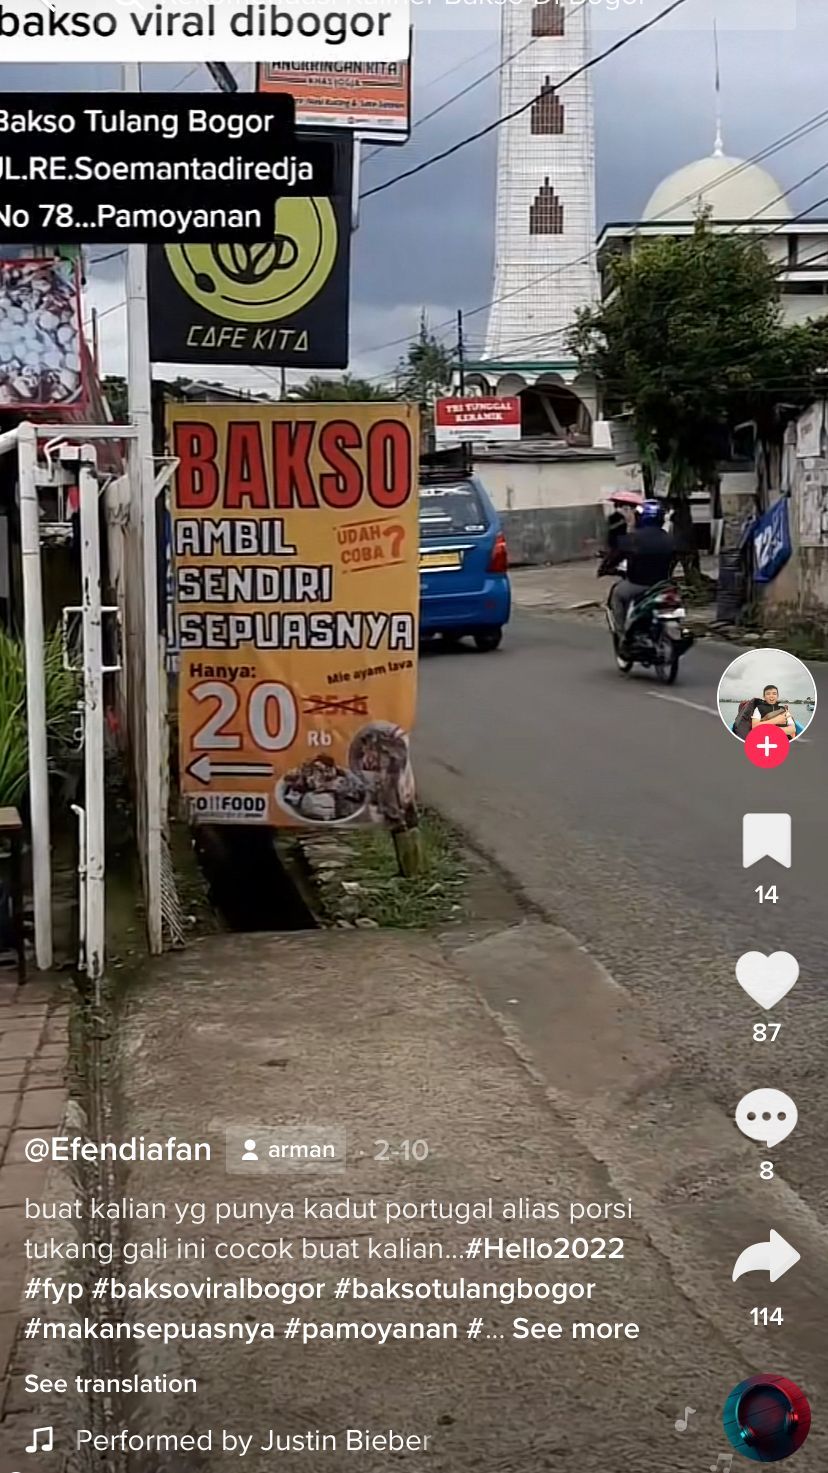 5 Bakso Viral di Bogor, Topping Tulang Rangu dan Bakso Urat Besar